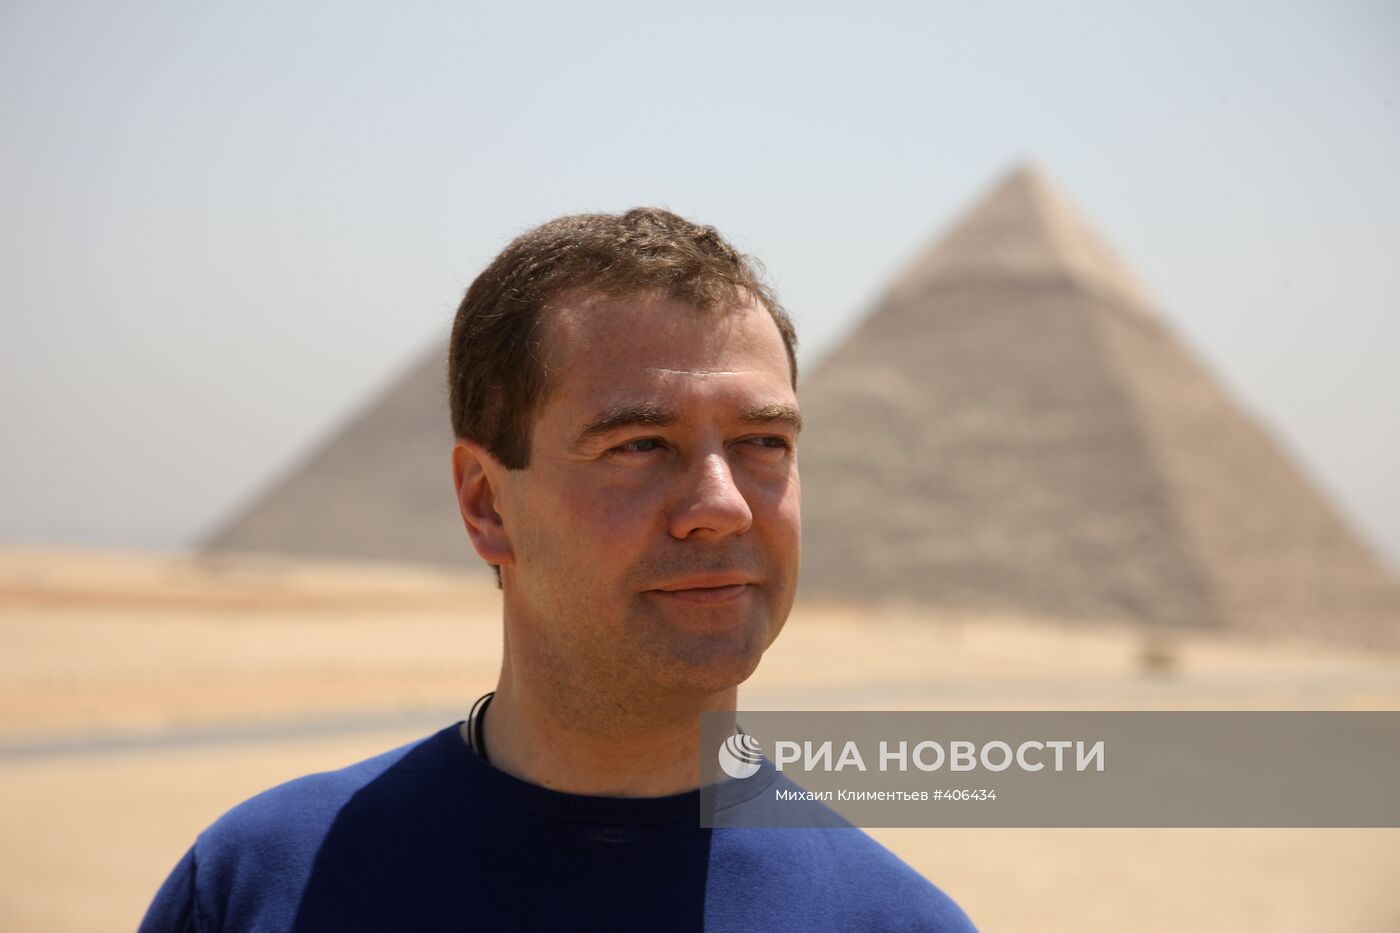 Официальный визит президента РФ Д.Медведева в Египет. 2-й день